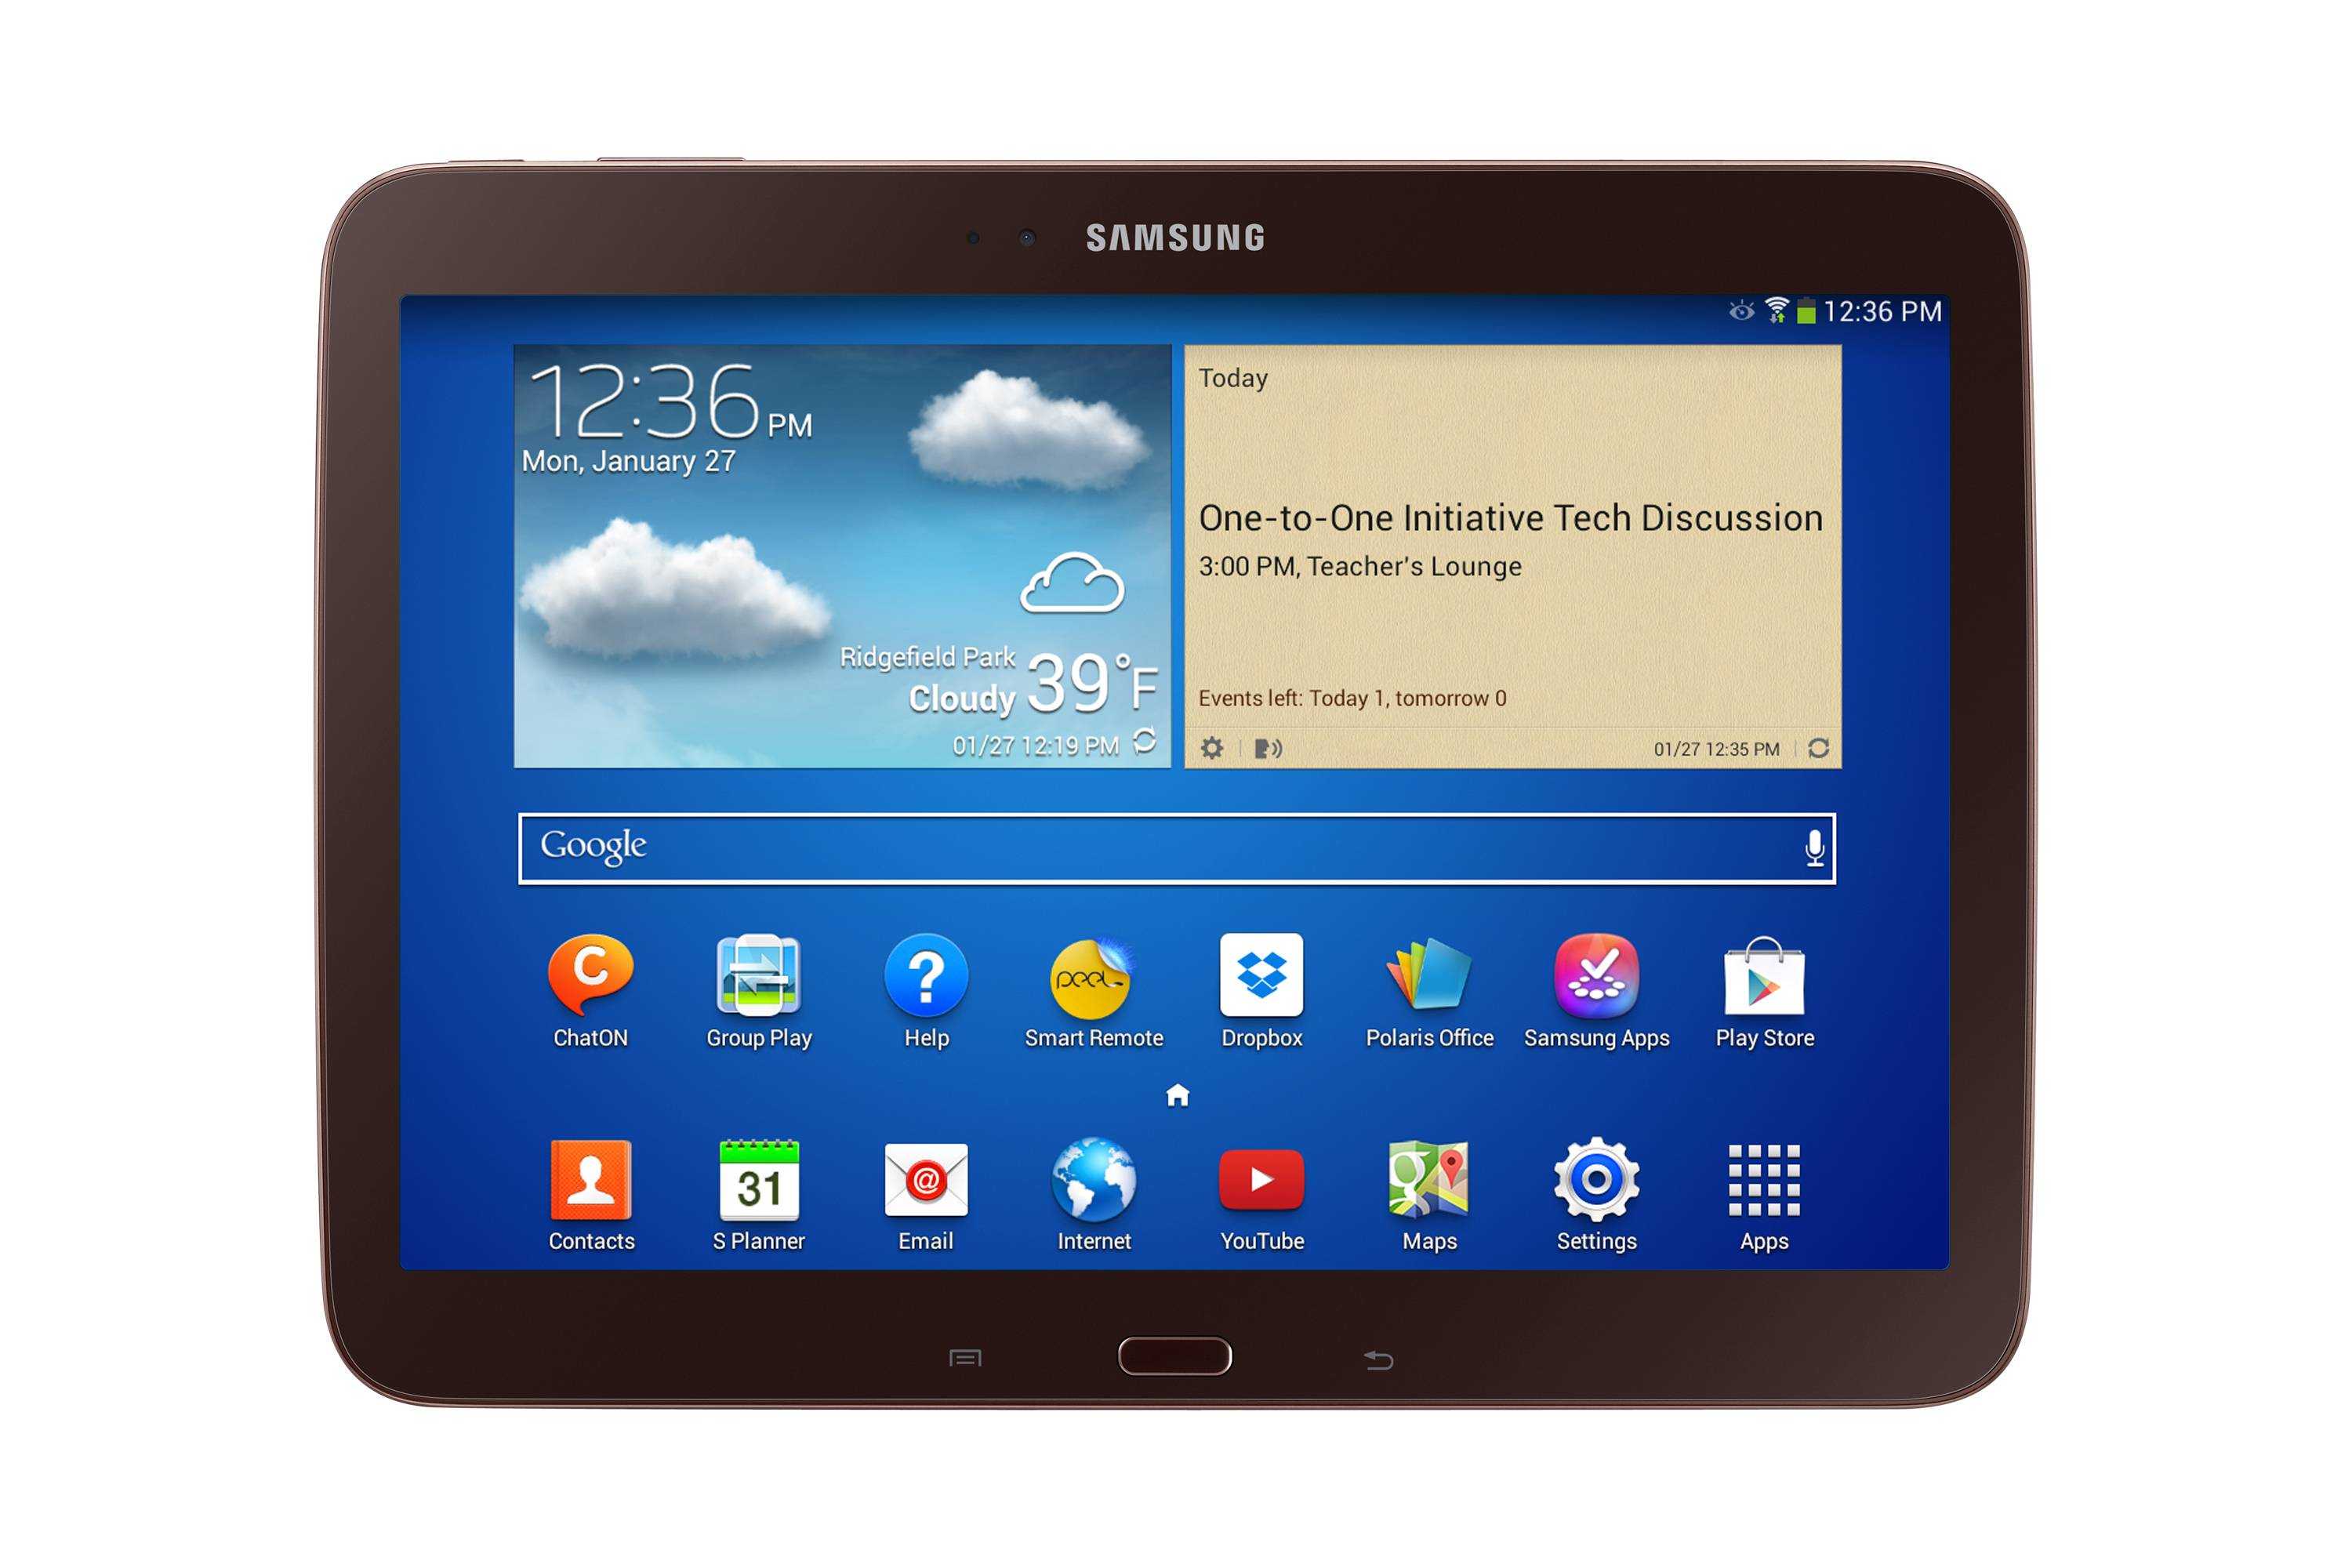 Планшет Samsung Galaxy Tab 2 70 - подробные характеристики обзоры видео фото Цены в интернет-магазинах где можно купить планшет Samsung Galaxy Tab 2 70